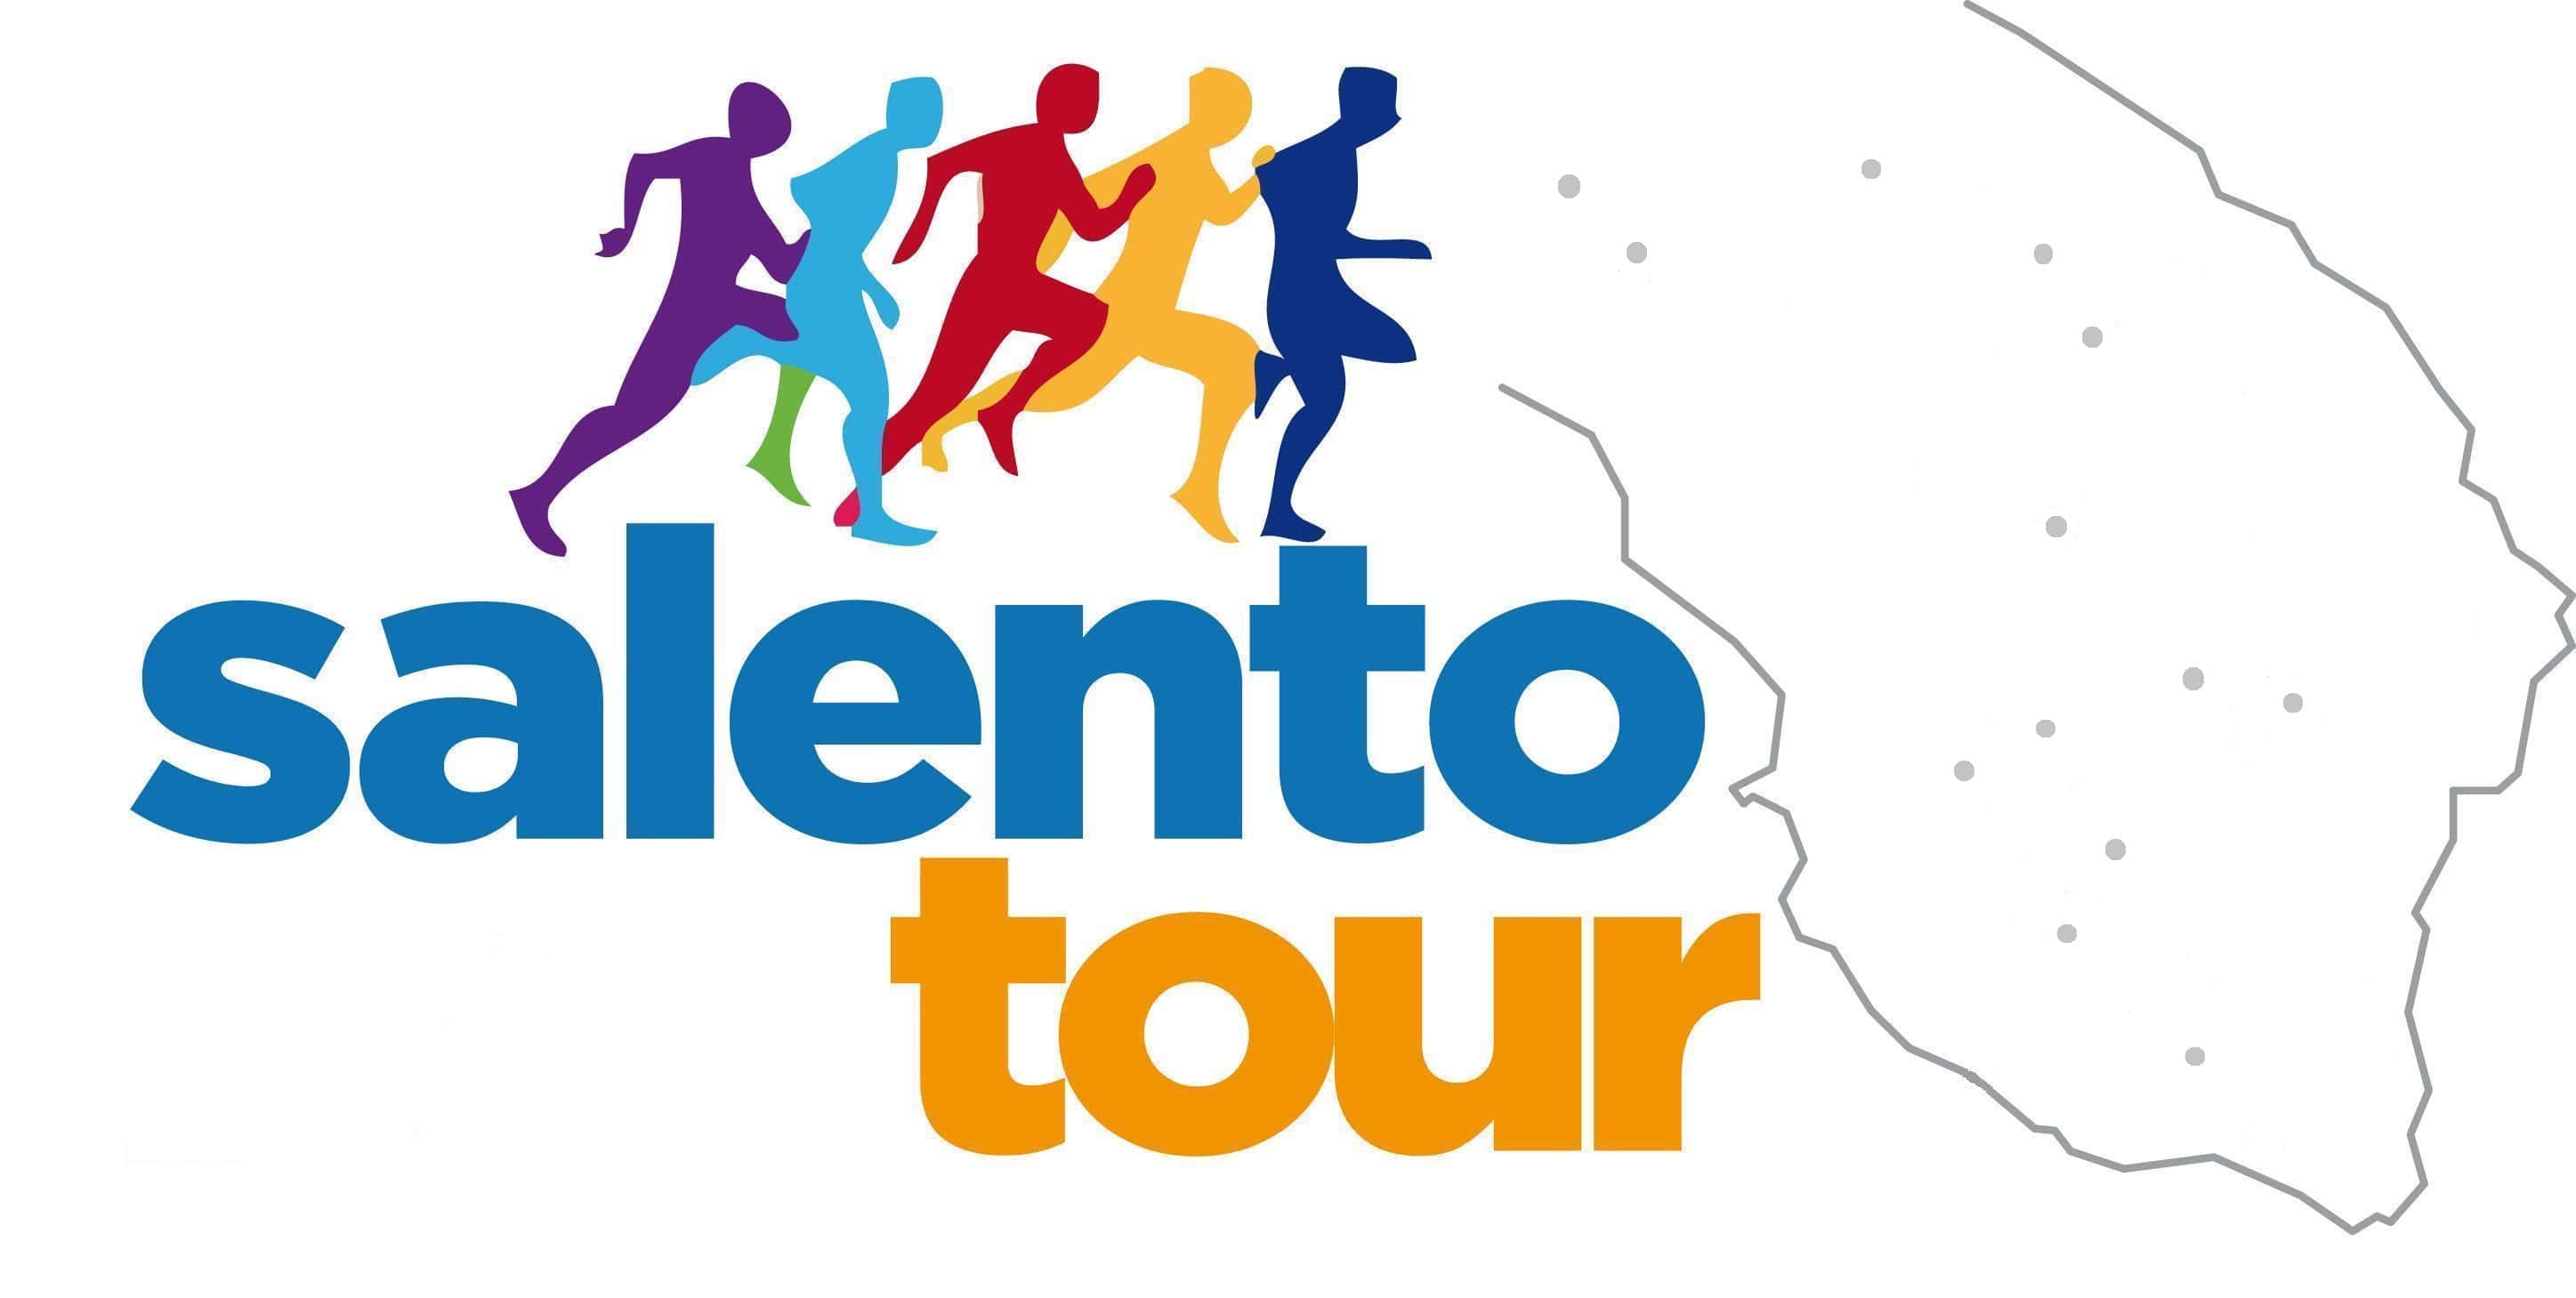 Salento Tour 2018